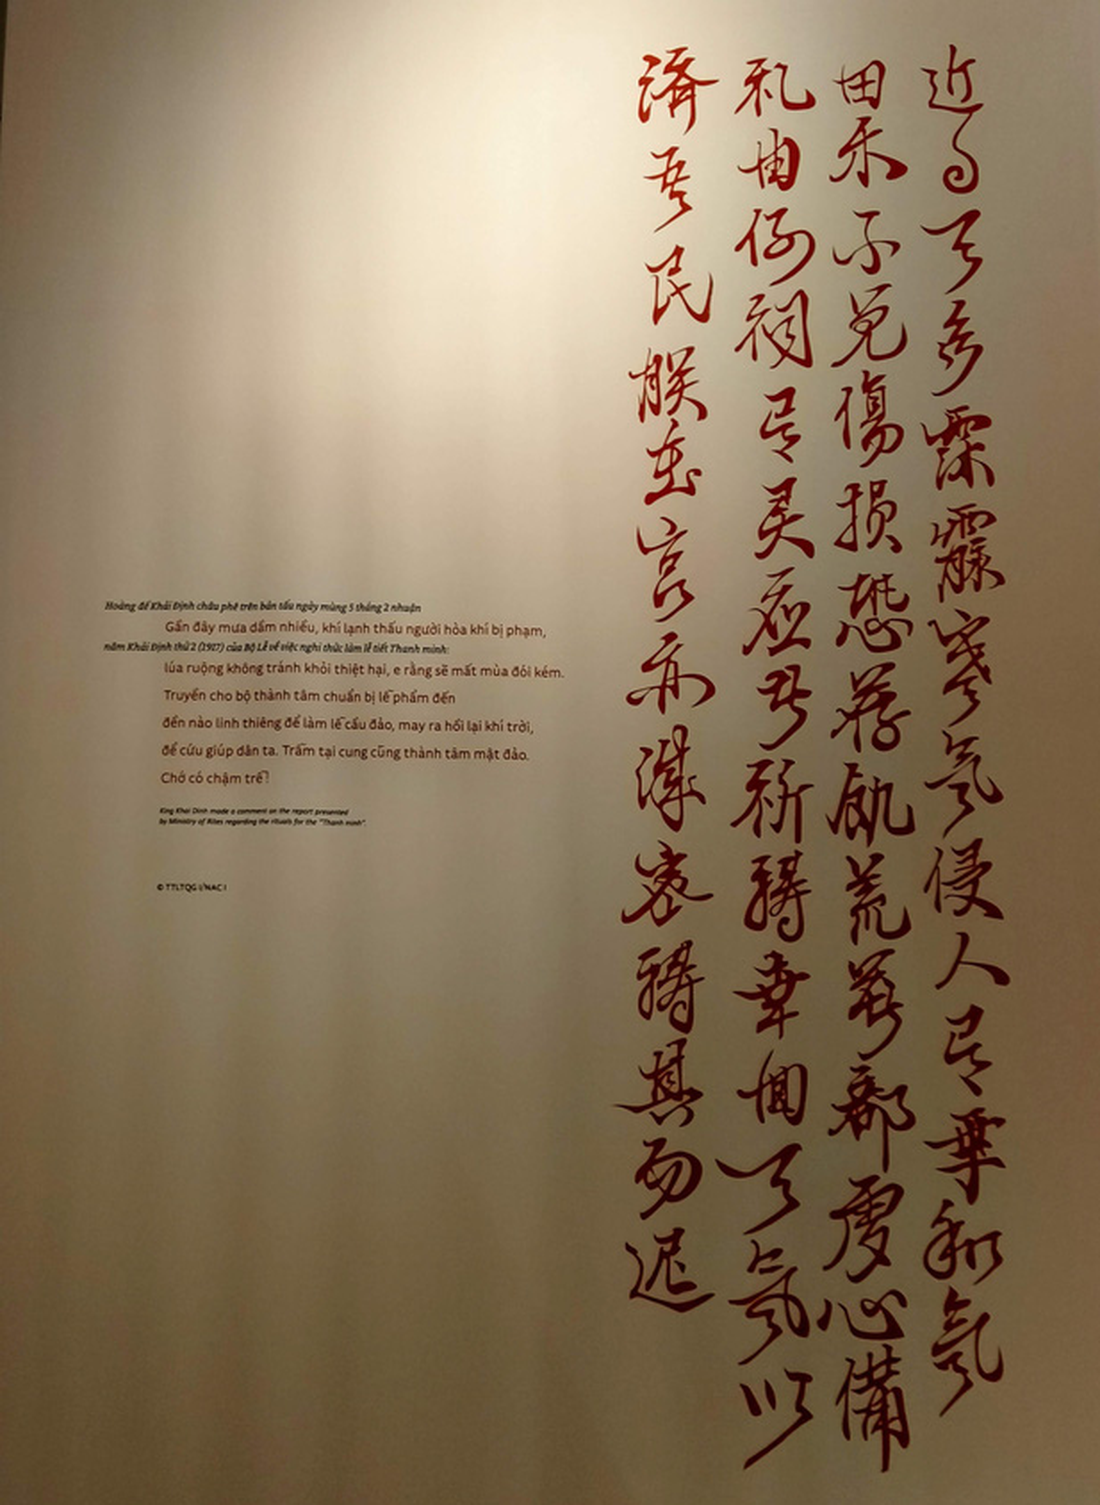 Xem cách hoàng đế triều Nguyễn trừ quan tham, nuôi dưỡng chúng dân - Ảnh 9.